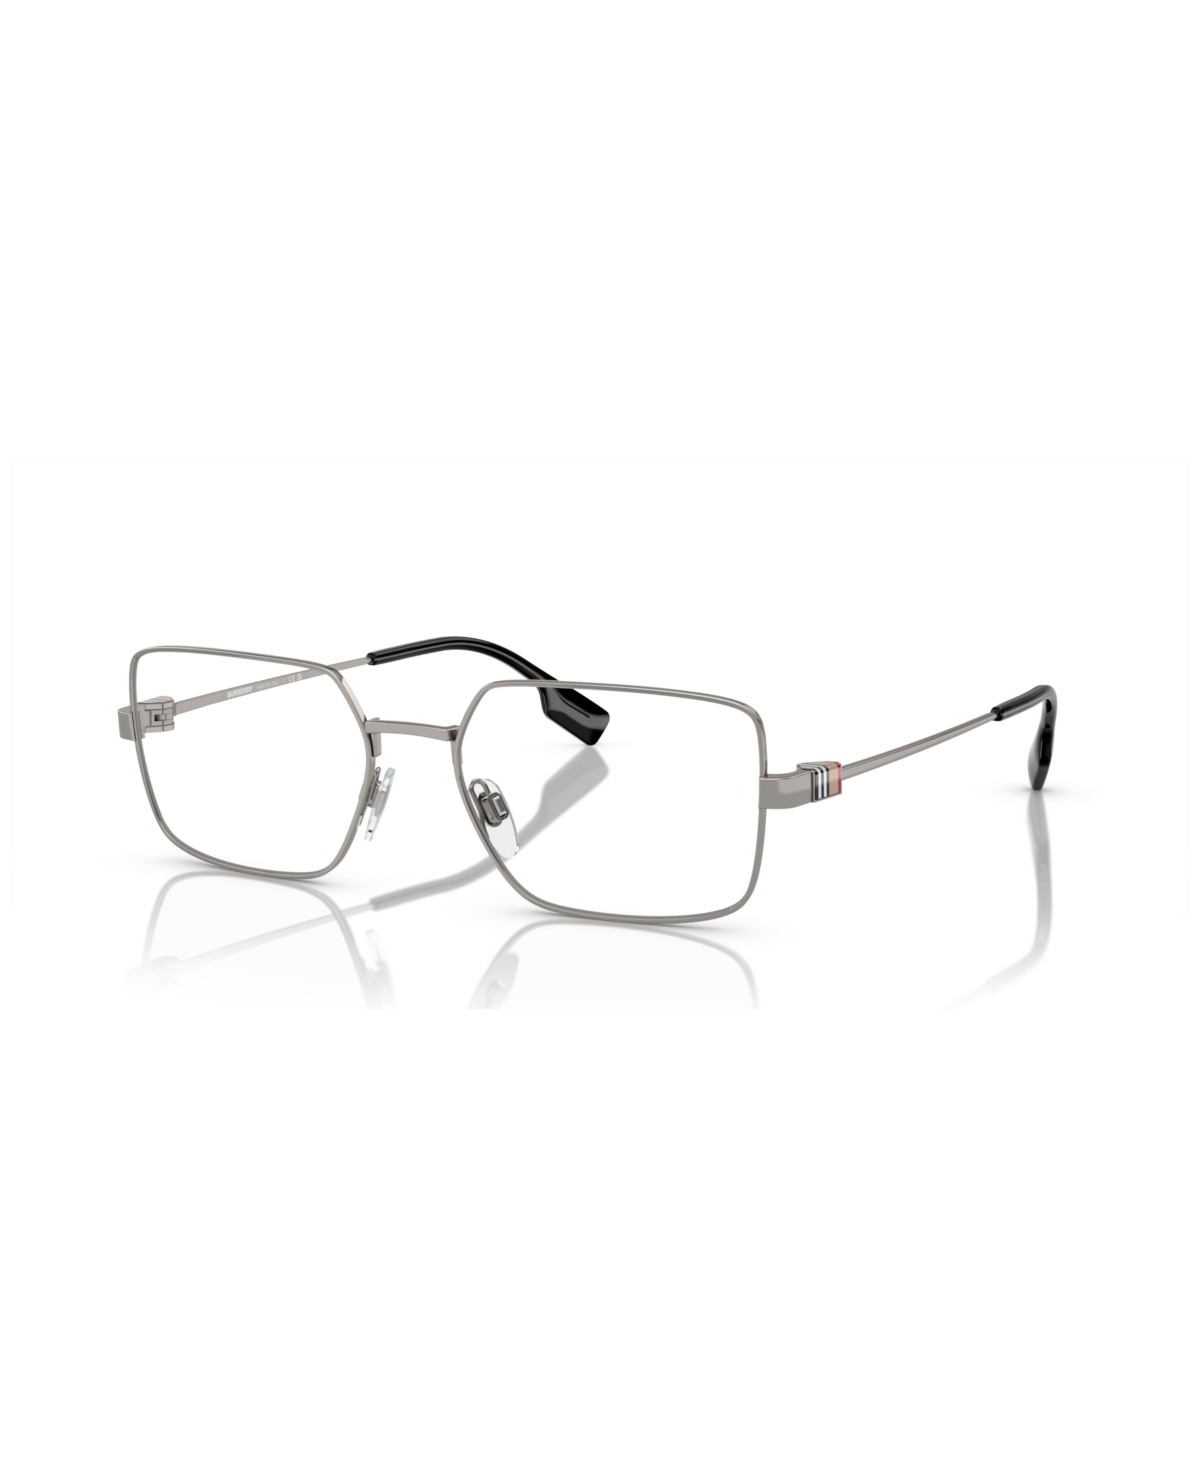 Men's Eyeglasses, BE1380 - Black